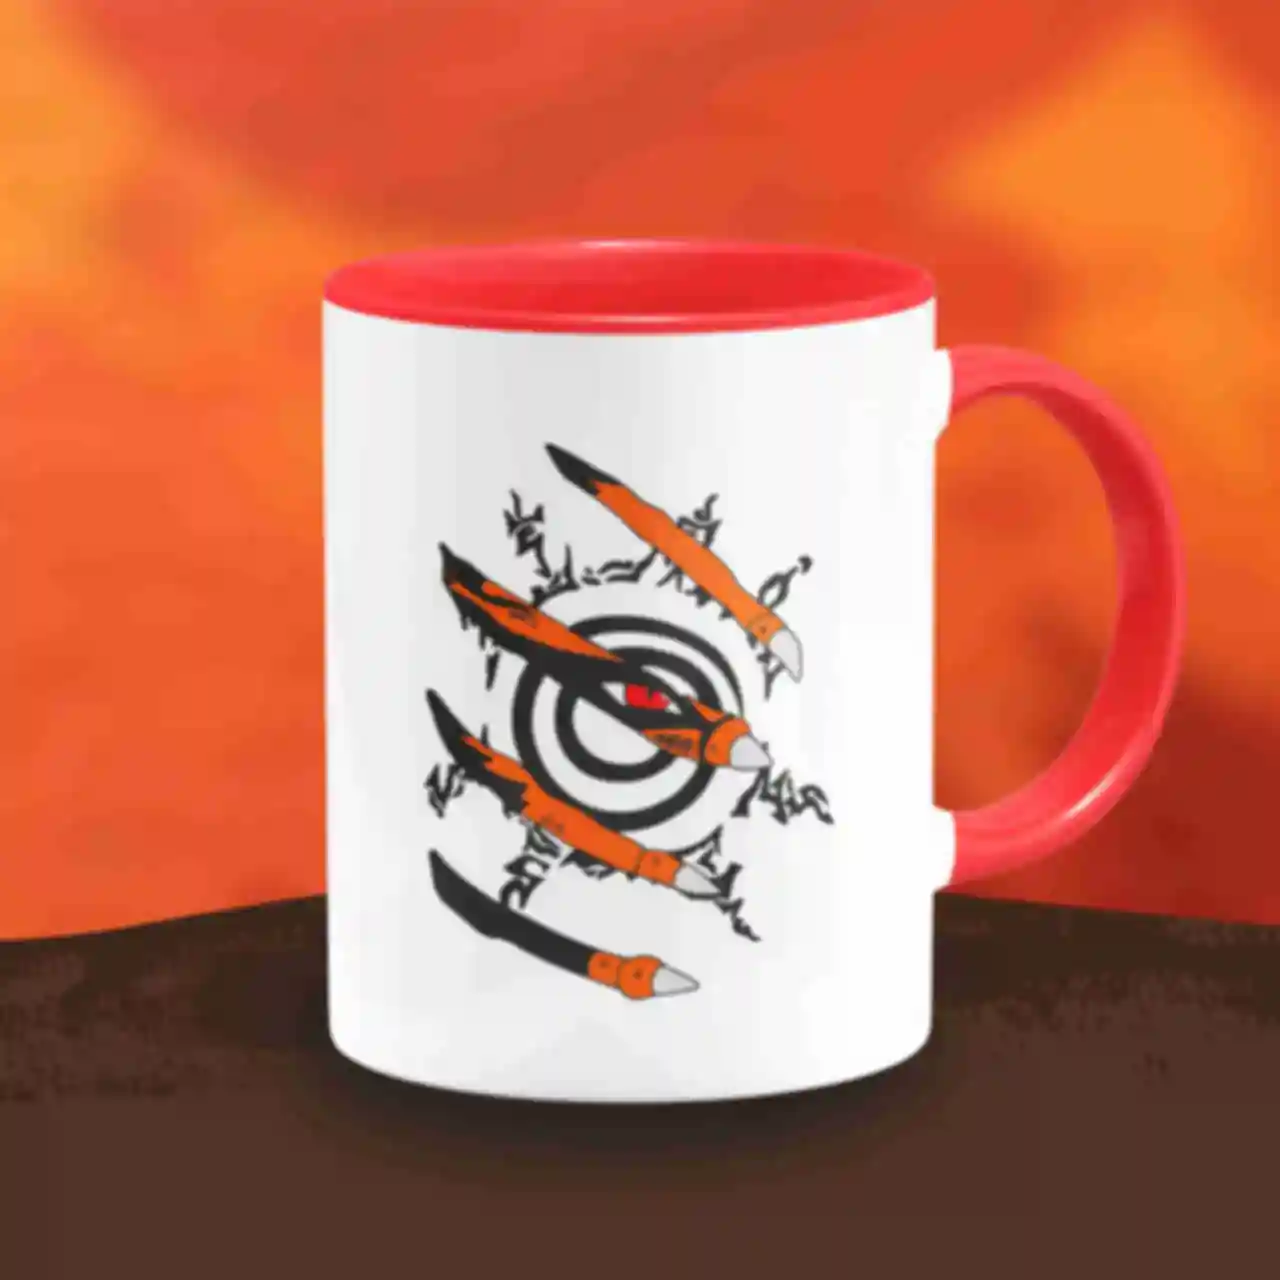 Чашка ⦁ Курама ⦁ Кружка Девятихвостый кицунэ ⦁ Kurama ⦁ Сувениры и посуда ⦁ Подарки в стиле аниме Naruto. Фото №81